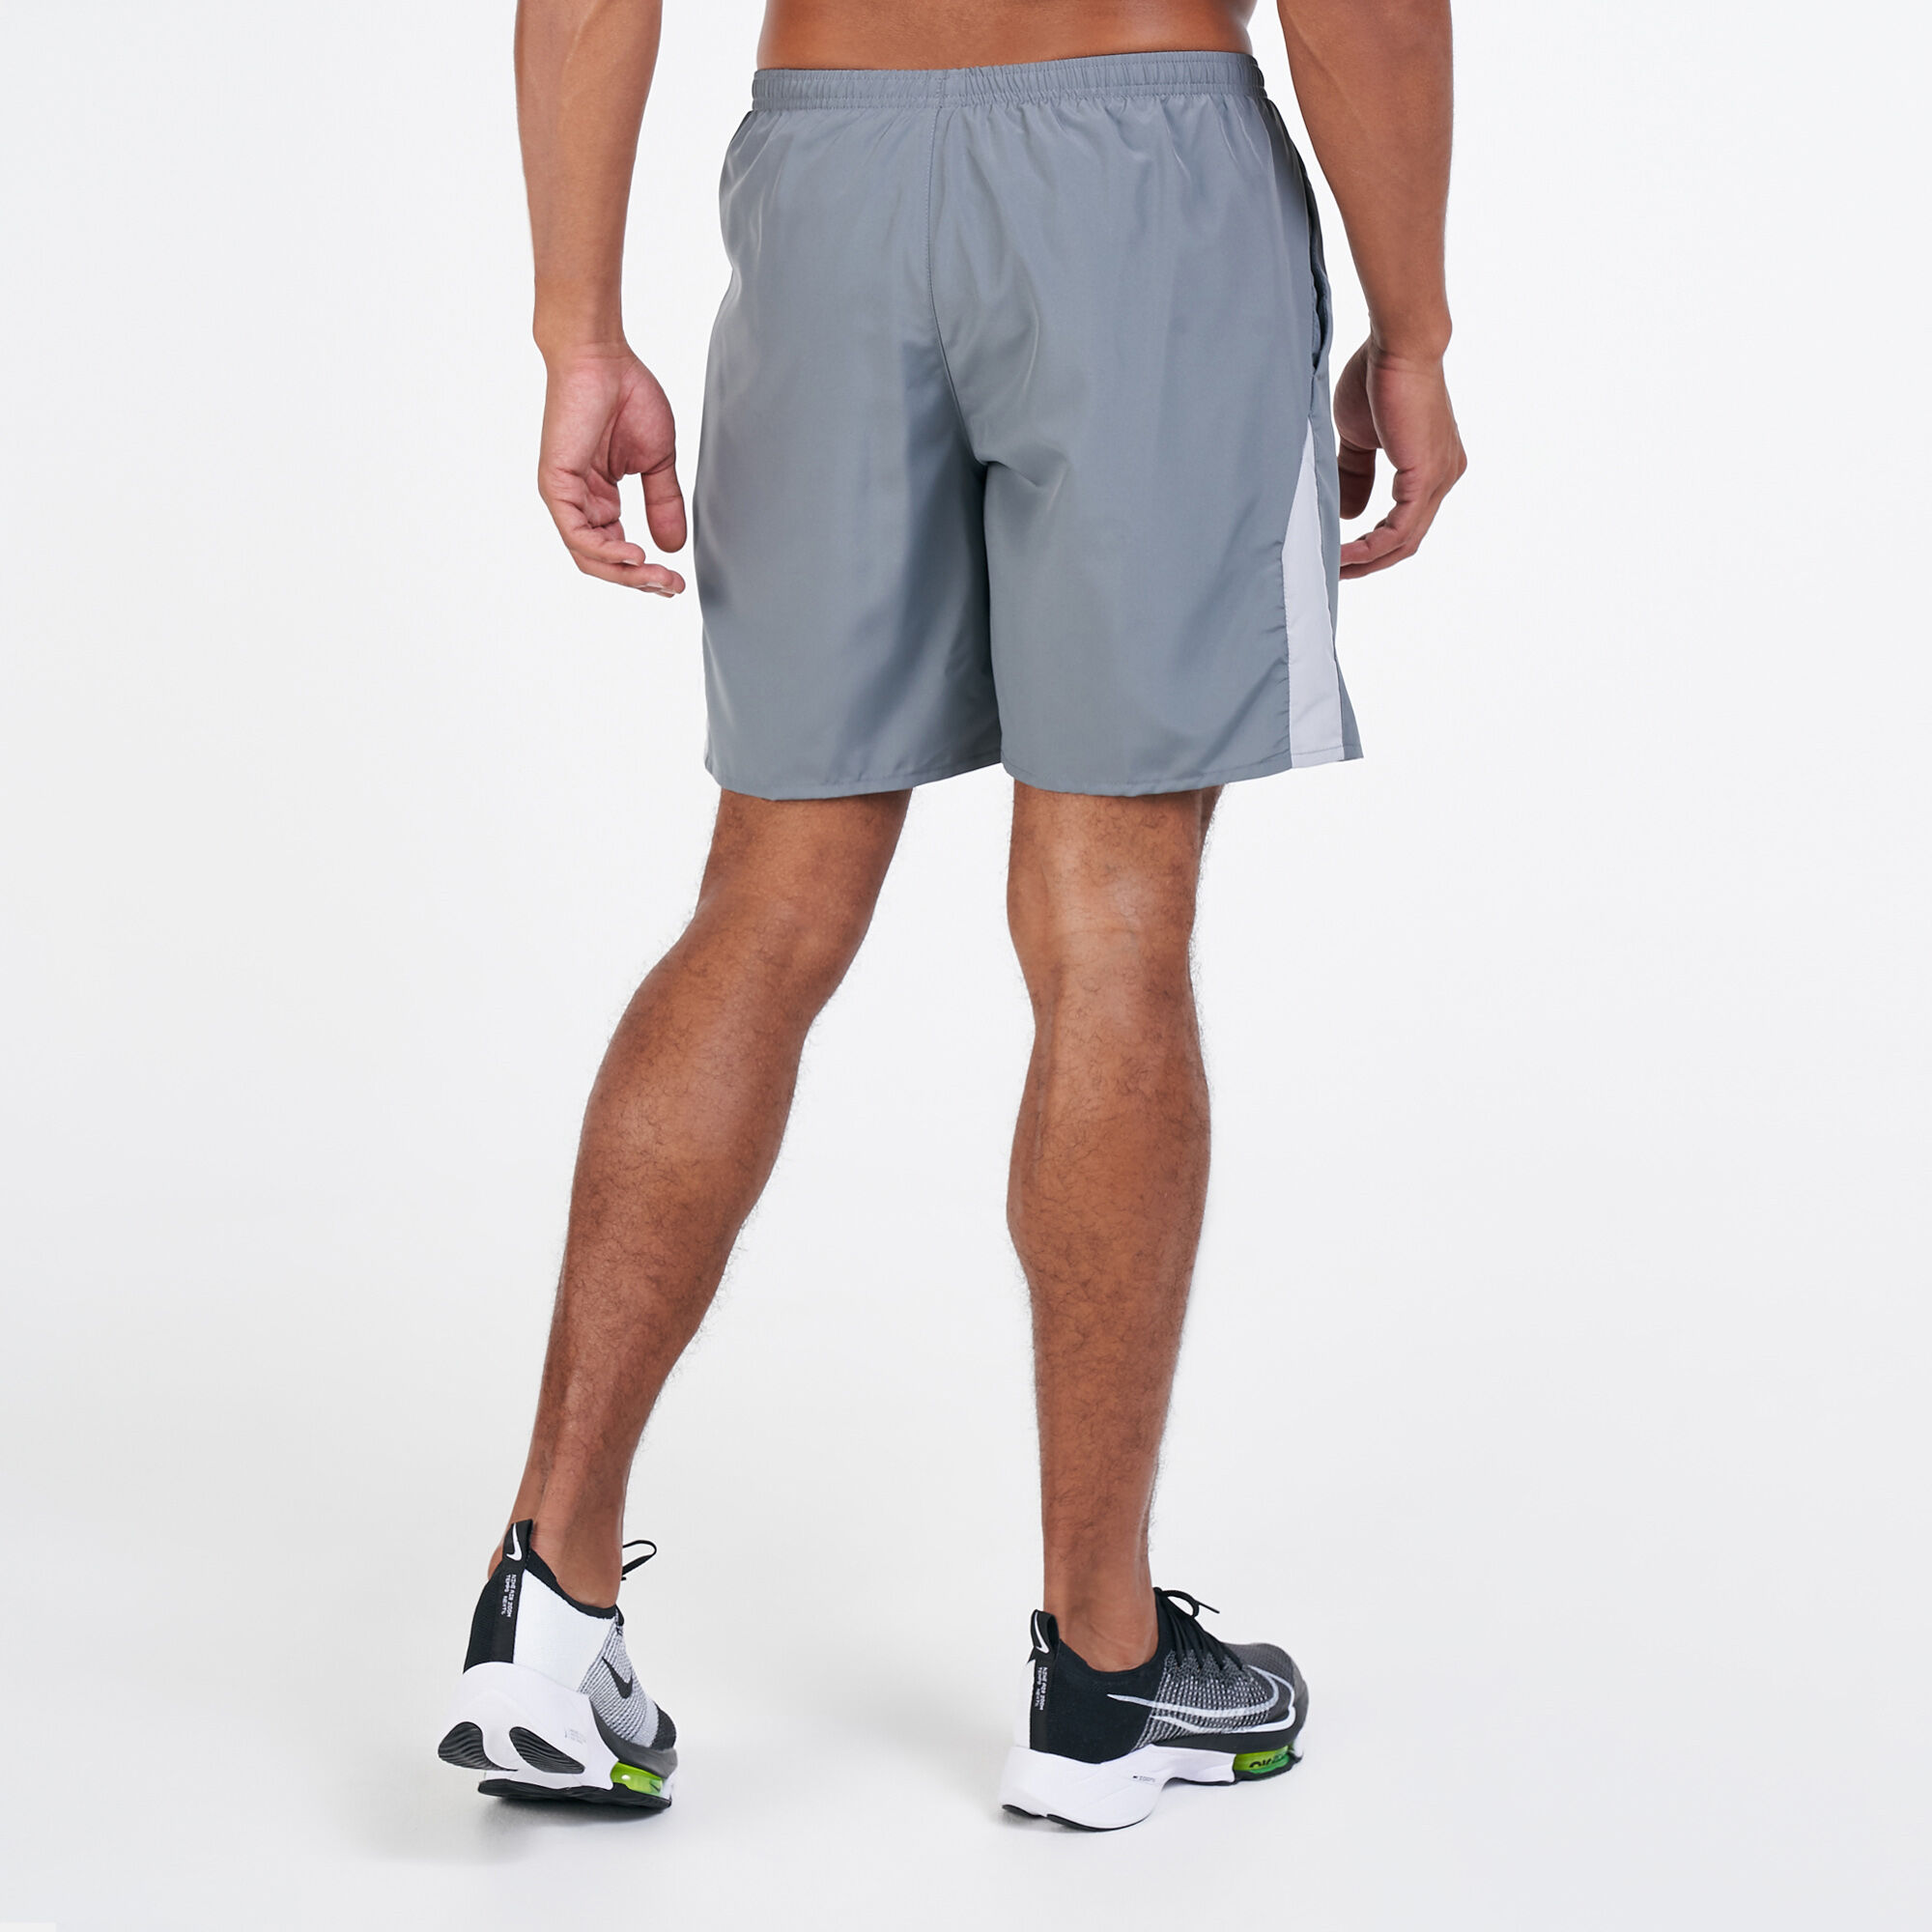 nike men's 7 inch running shorts